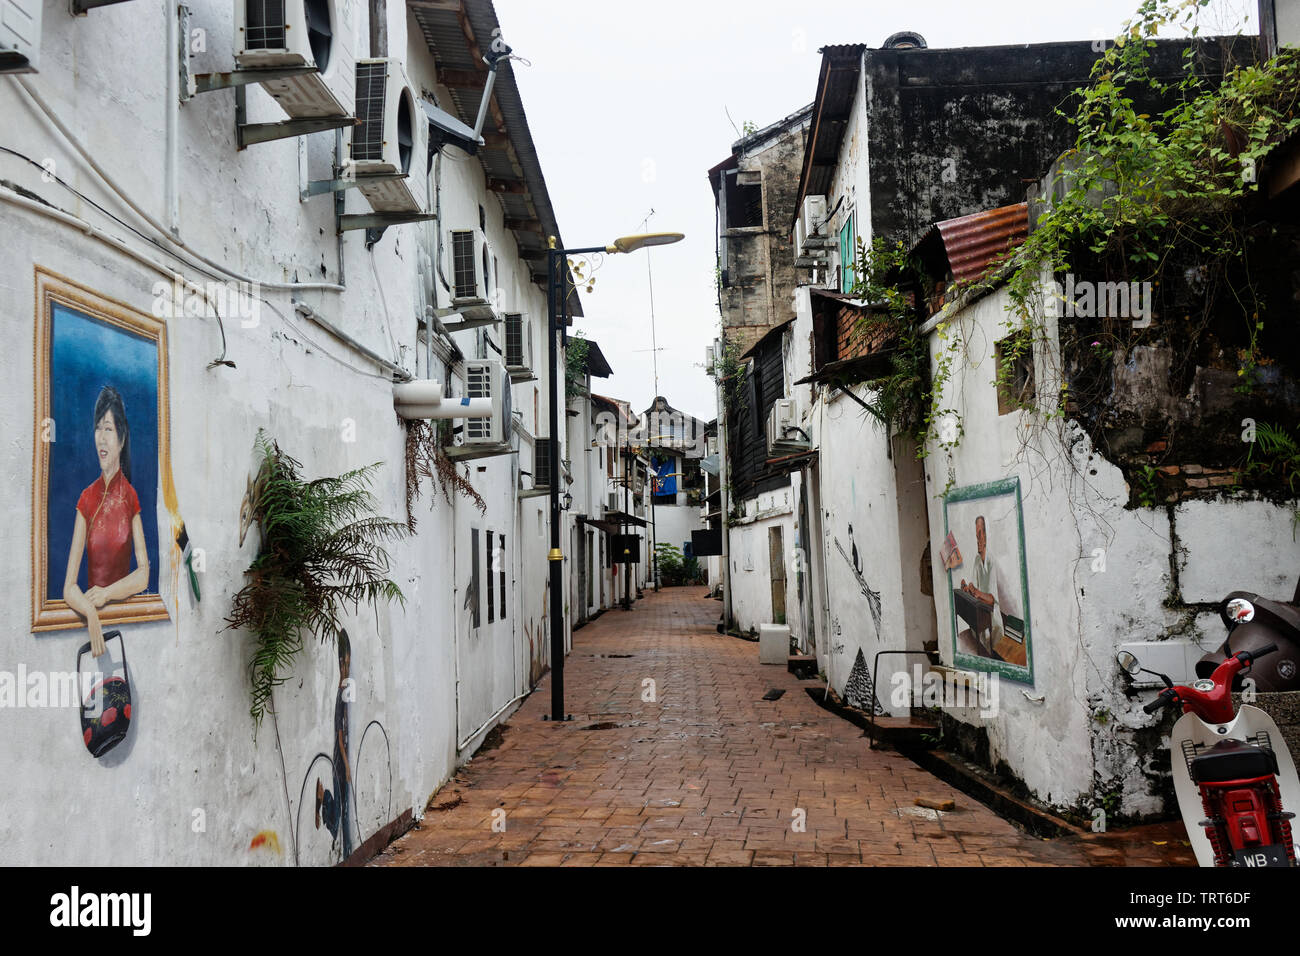 A street in Malacca Malaysia Stock Photo